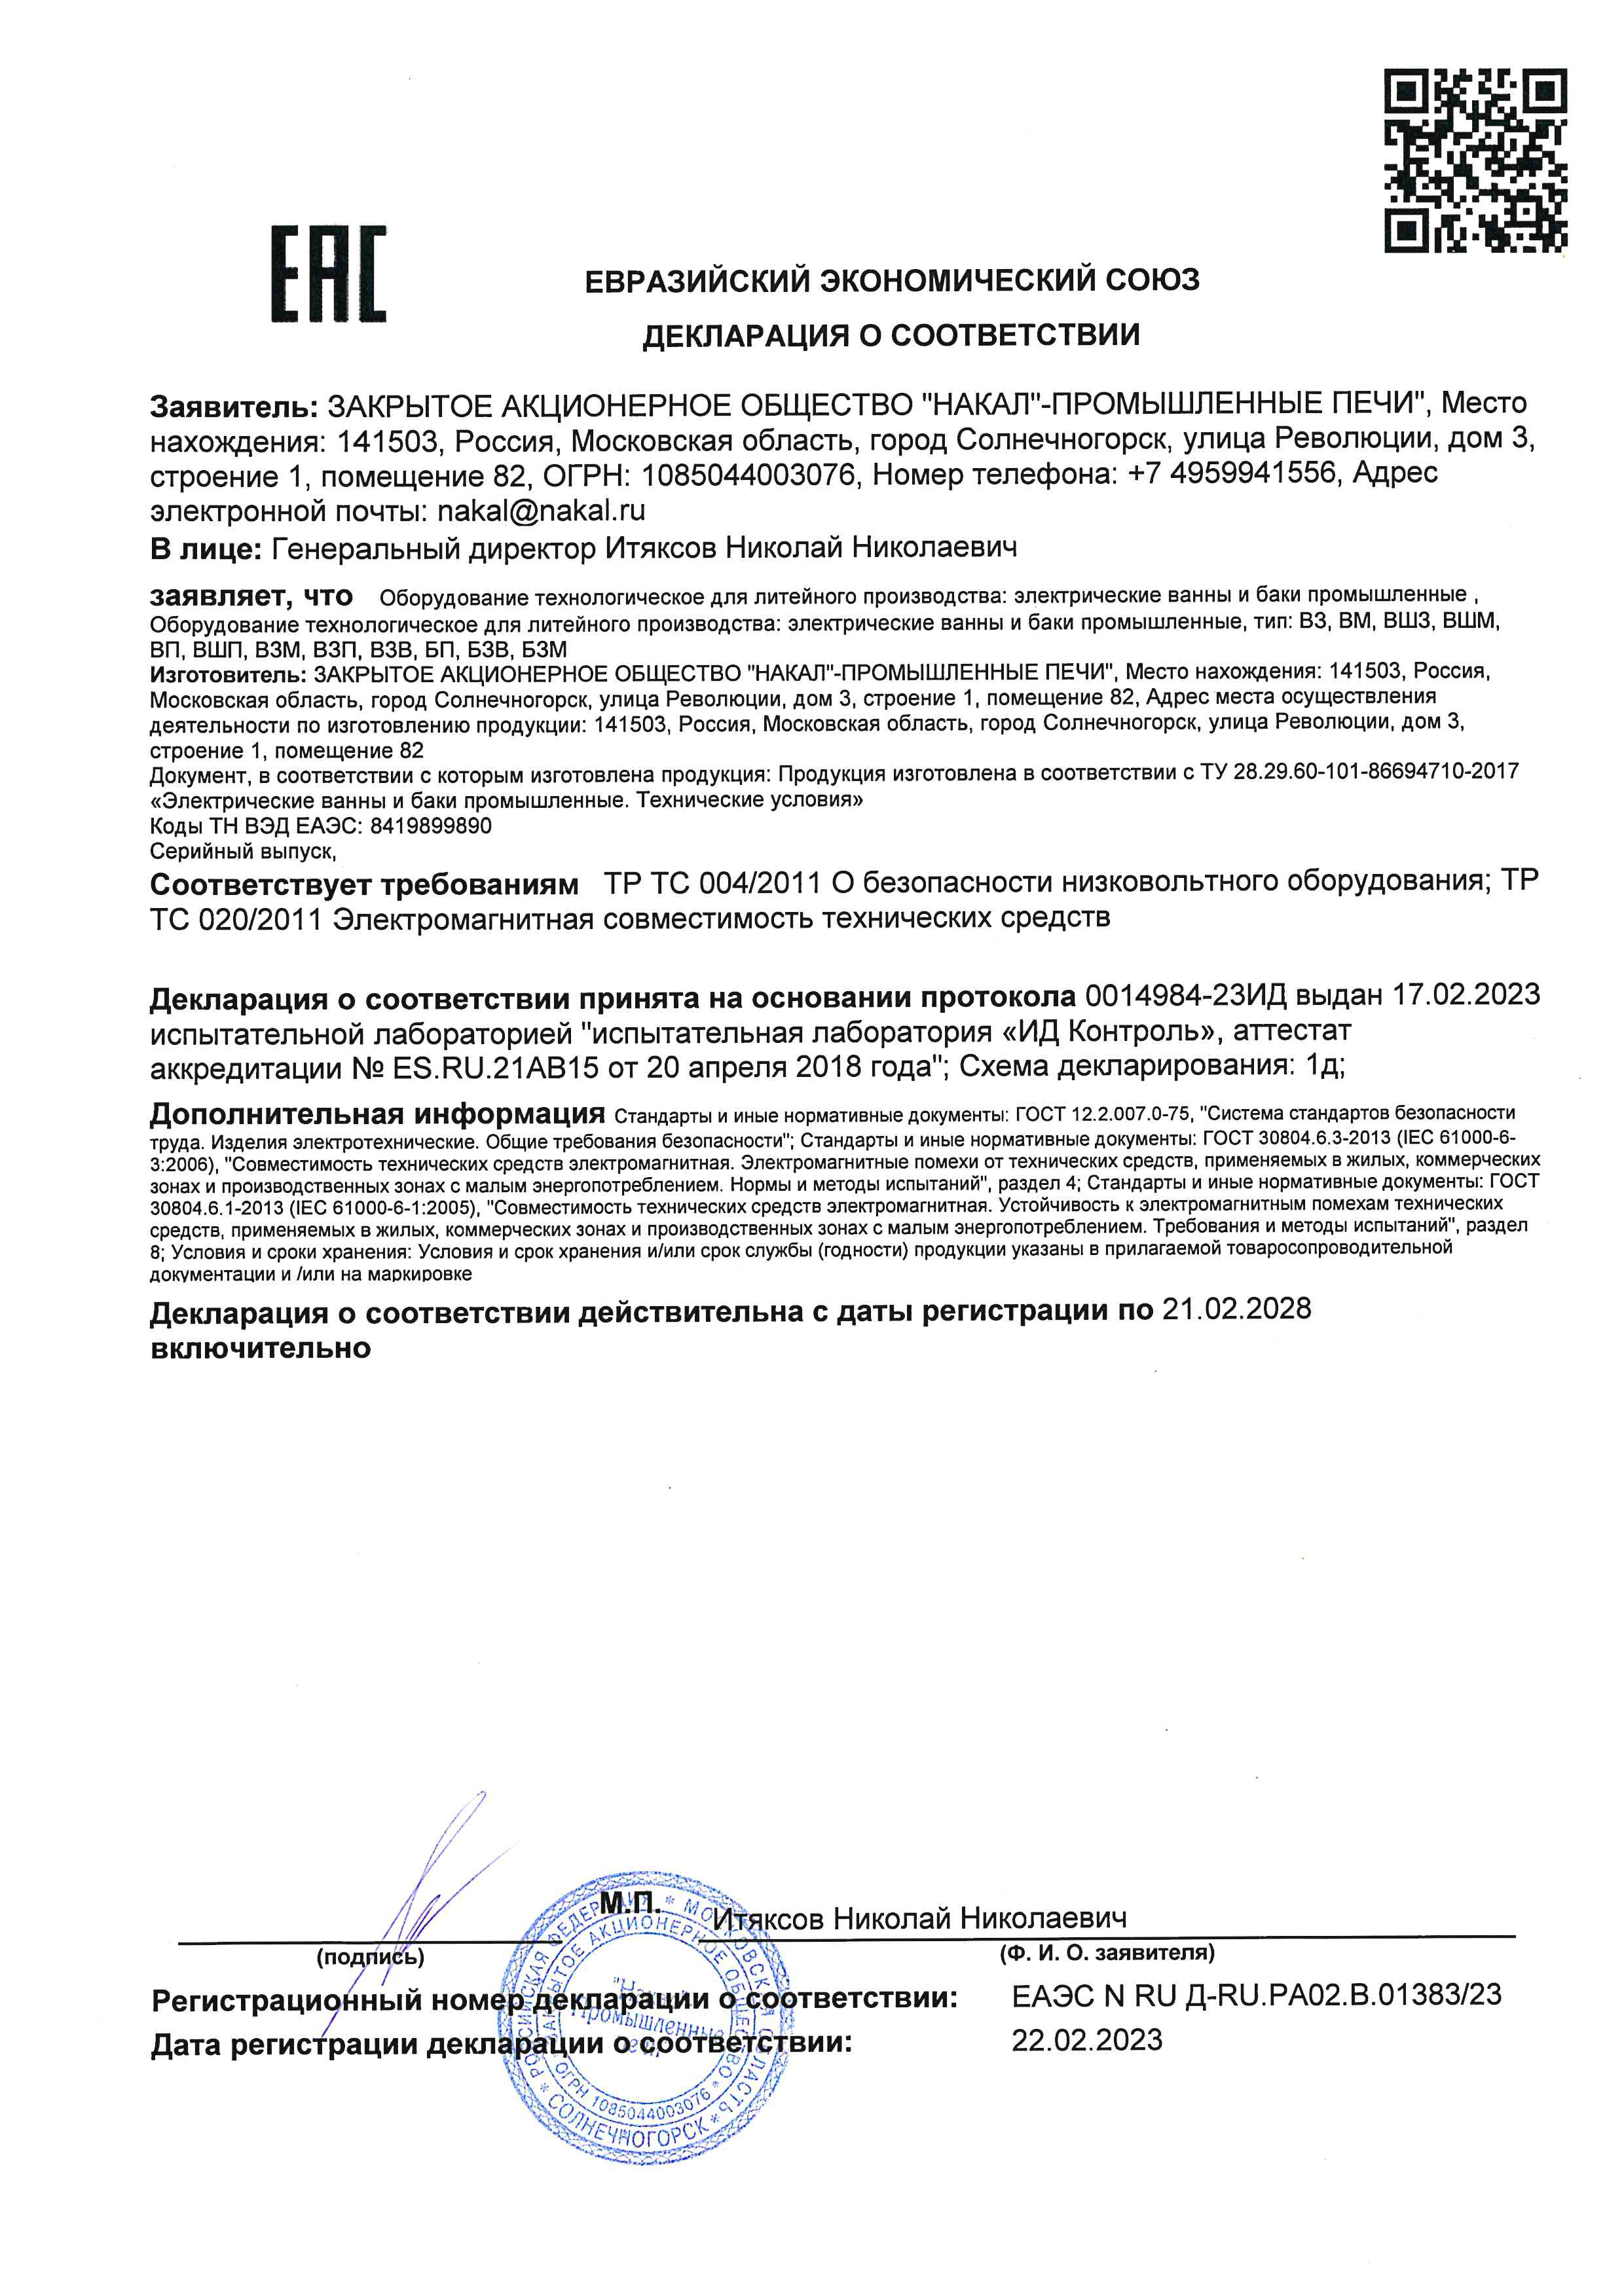 Сертификат соответствия на электрические ванны и баки промышленные